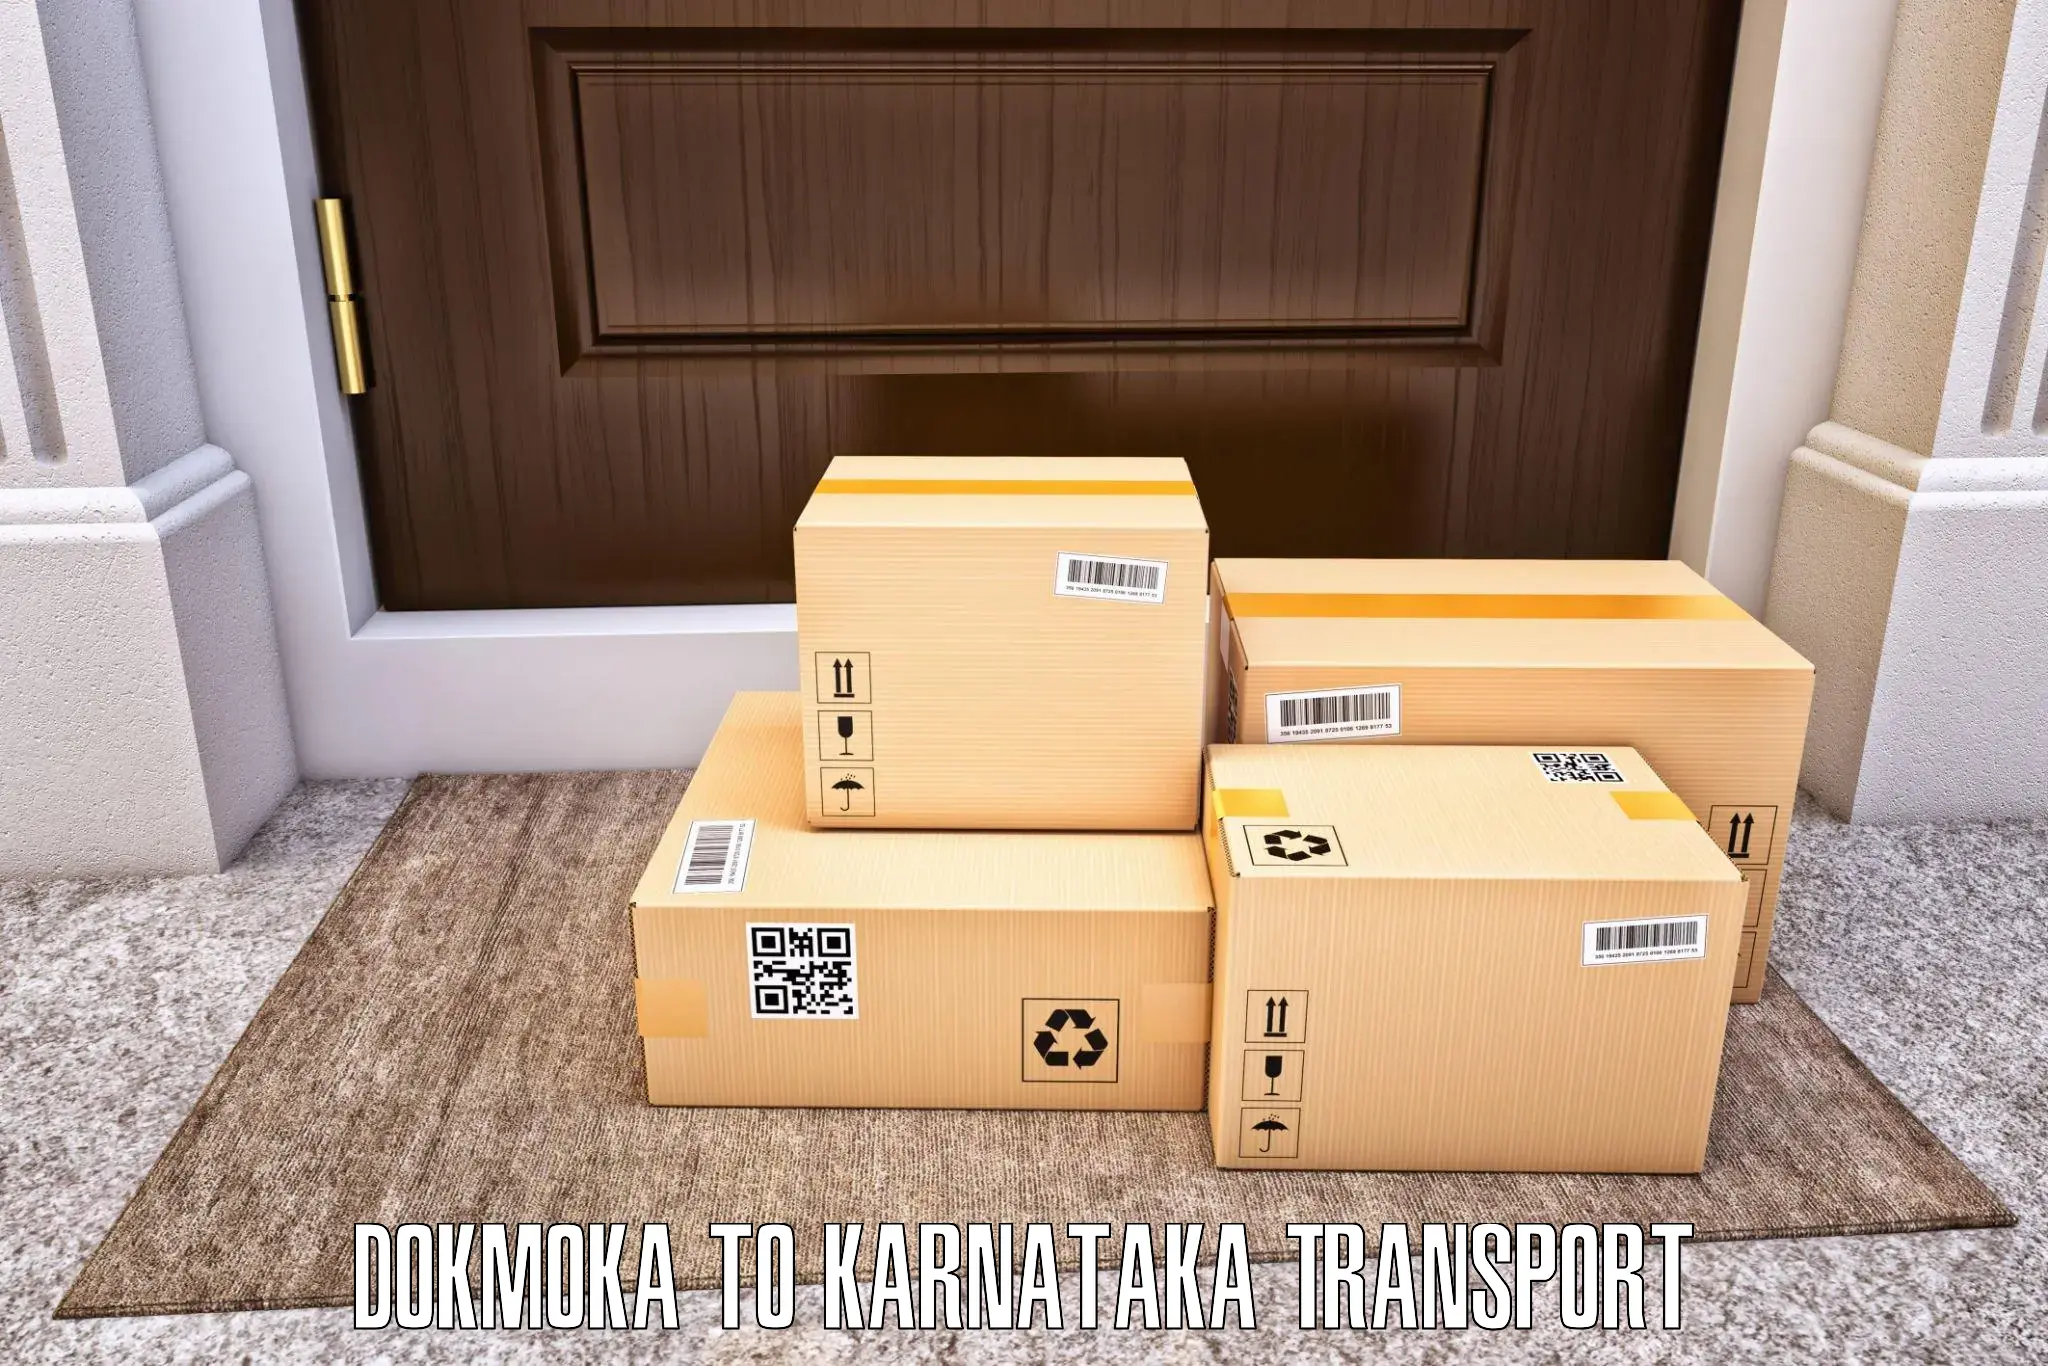 Cargo transportation services Dokmoka to Kowthal